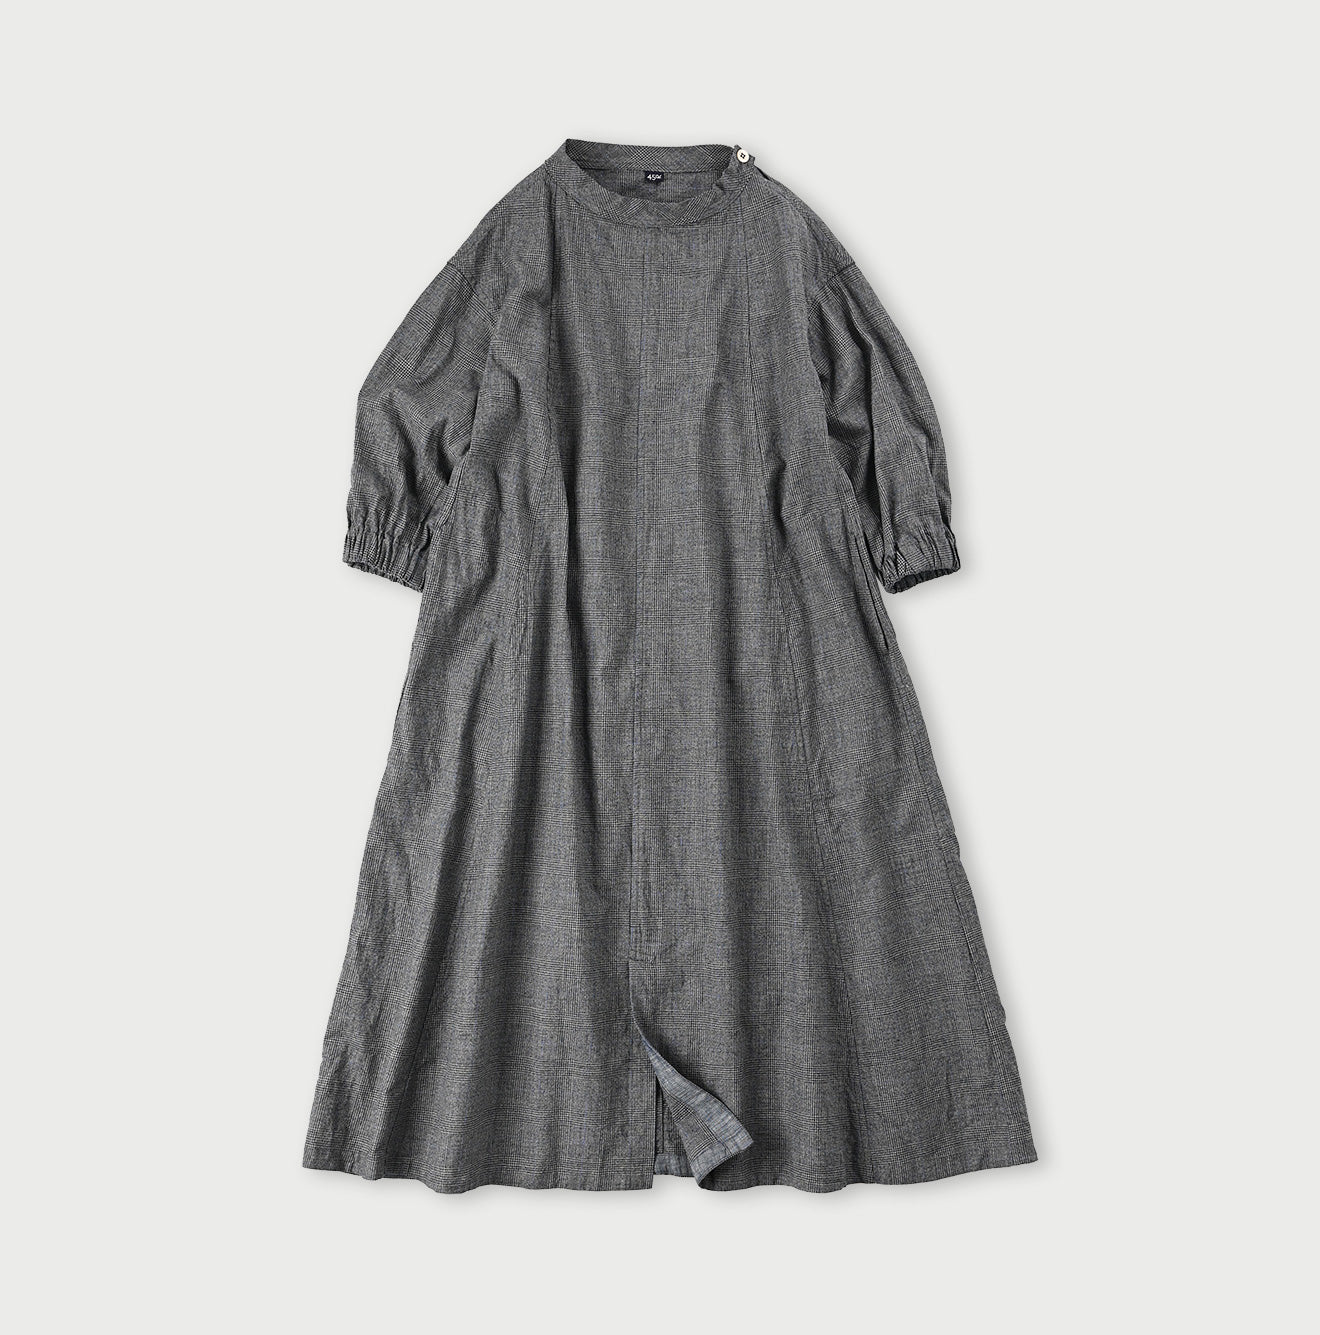 45R Yorimoku Cotton Tweed Sail Dress